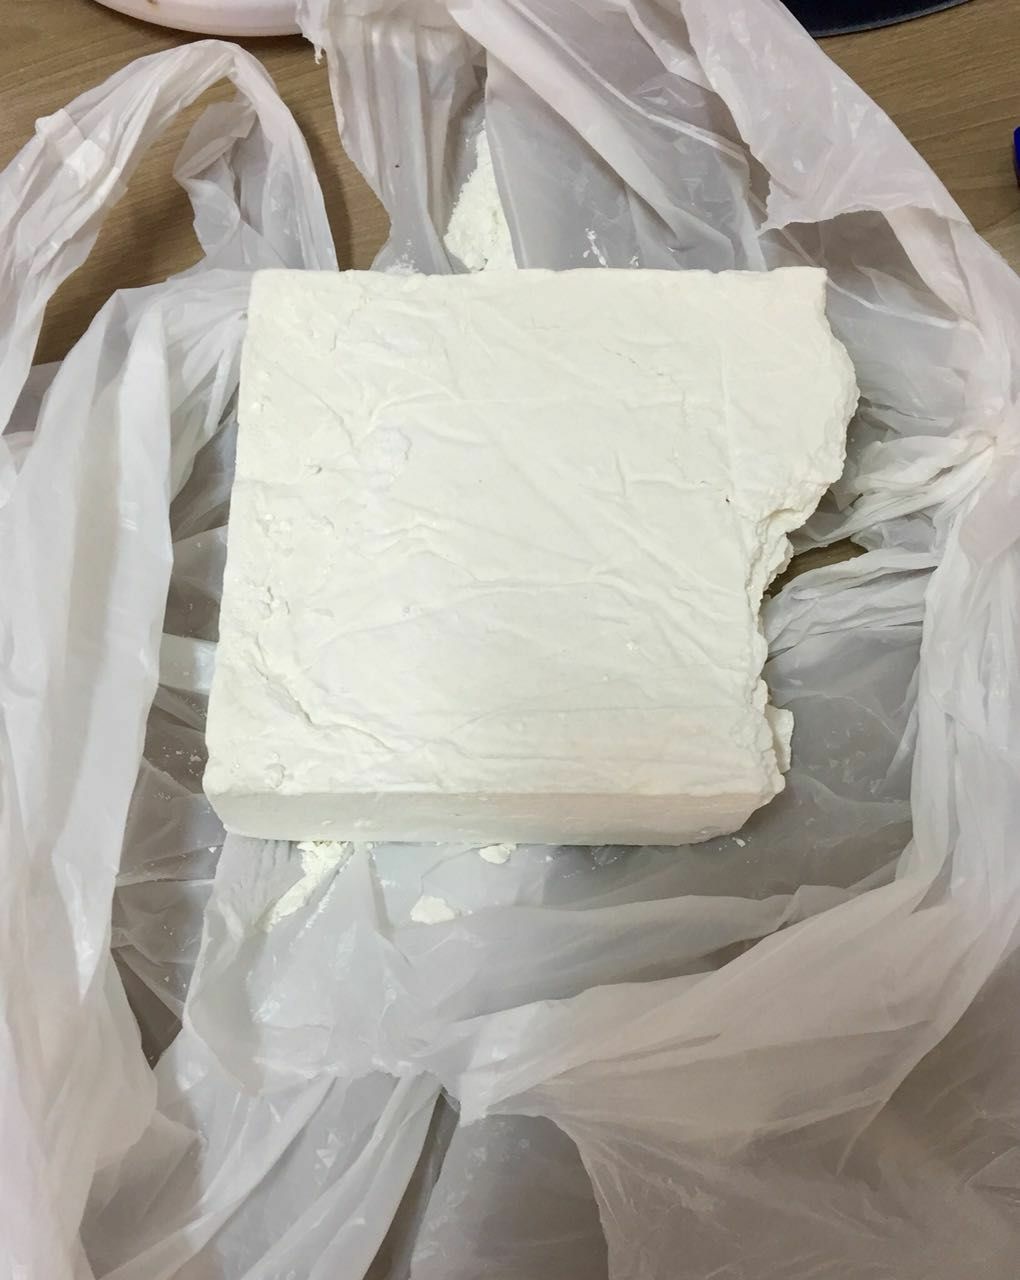 Meio quilo de cocaína é apreendido em Criciúma